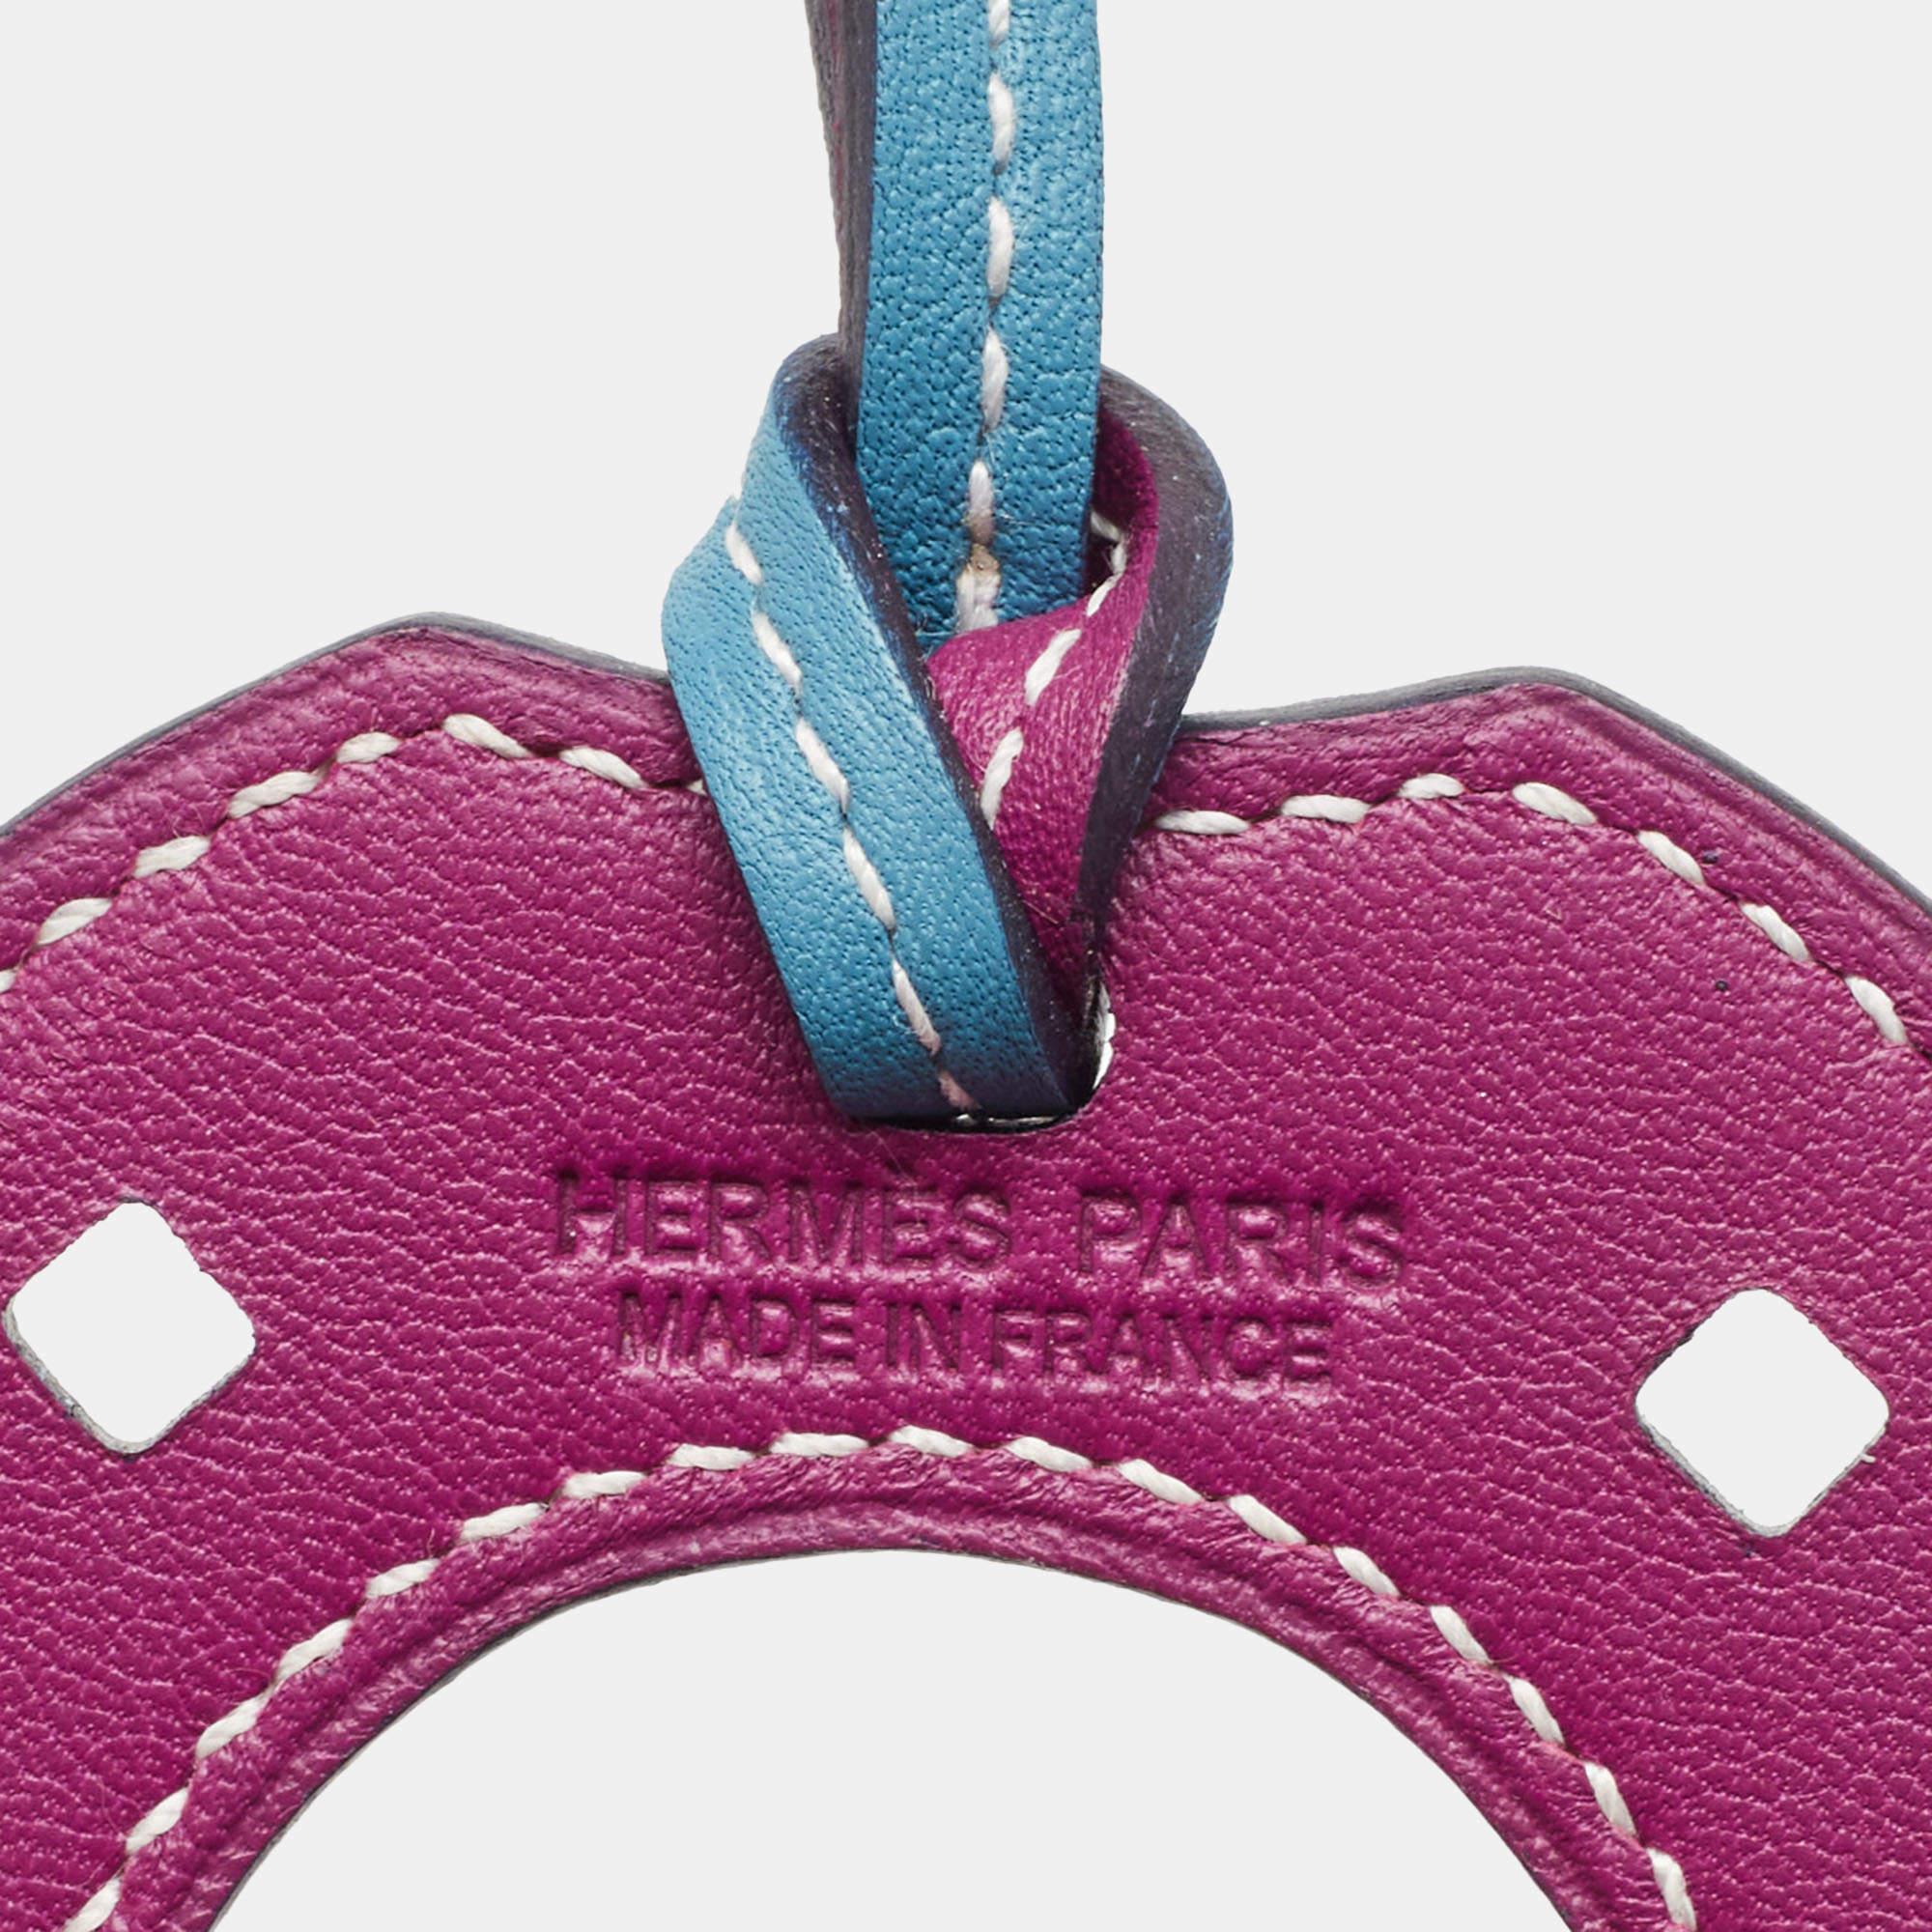 Pink Hermes Bleu Jean/Ultraviolet Swift Leather Paddock Fer a Cheval Bag Charm